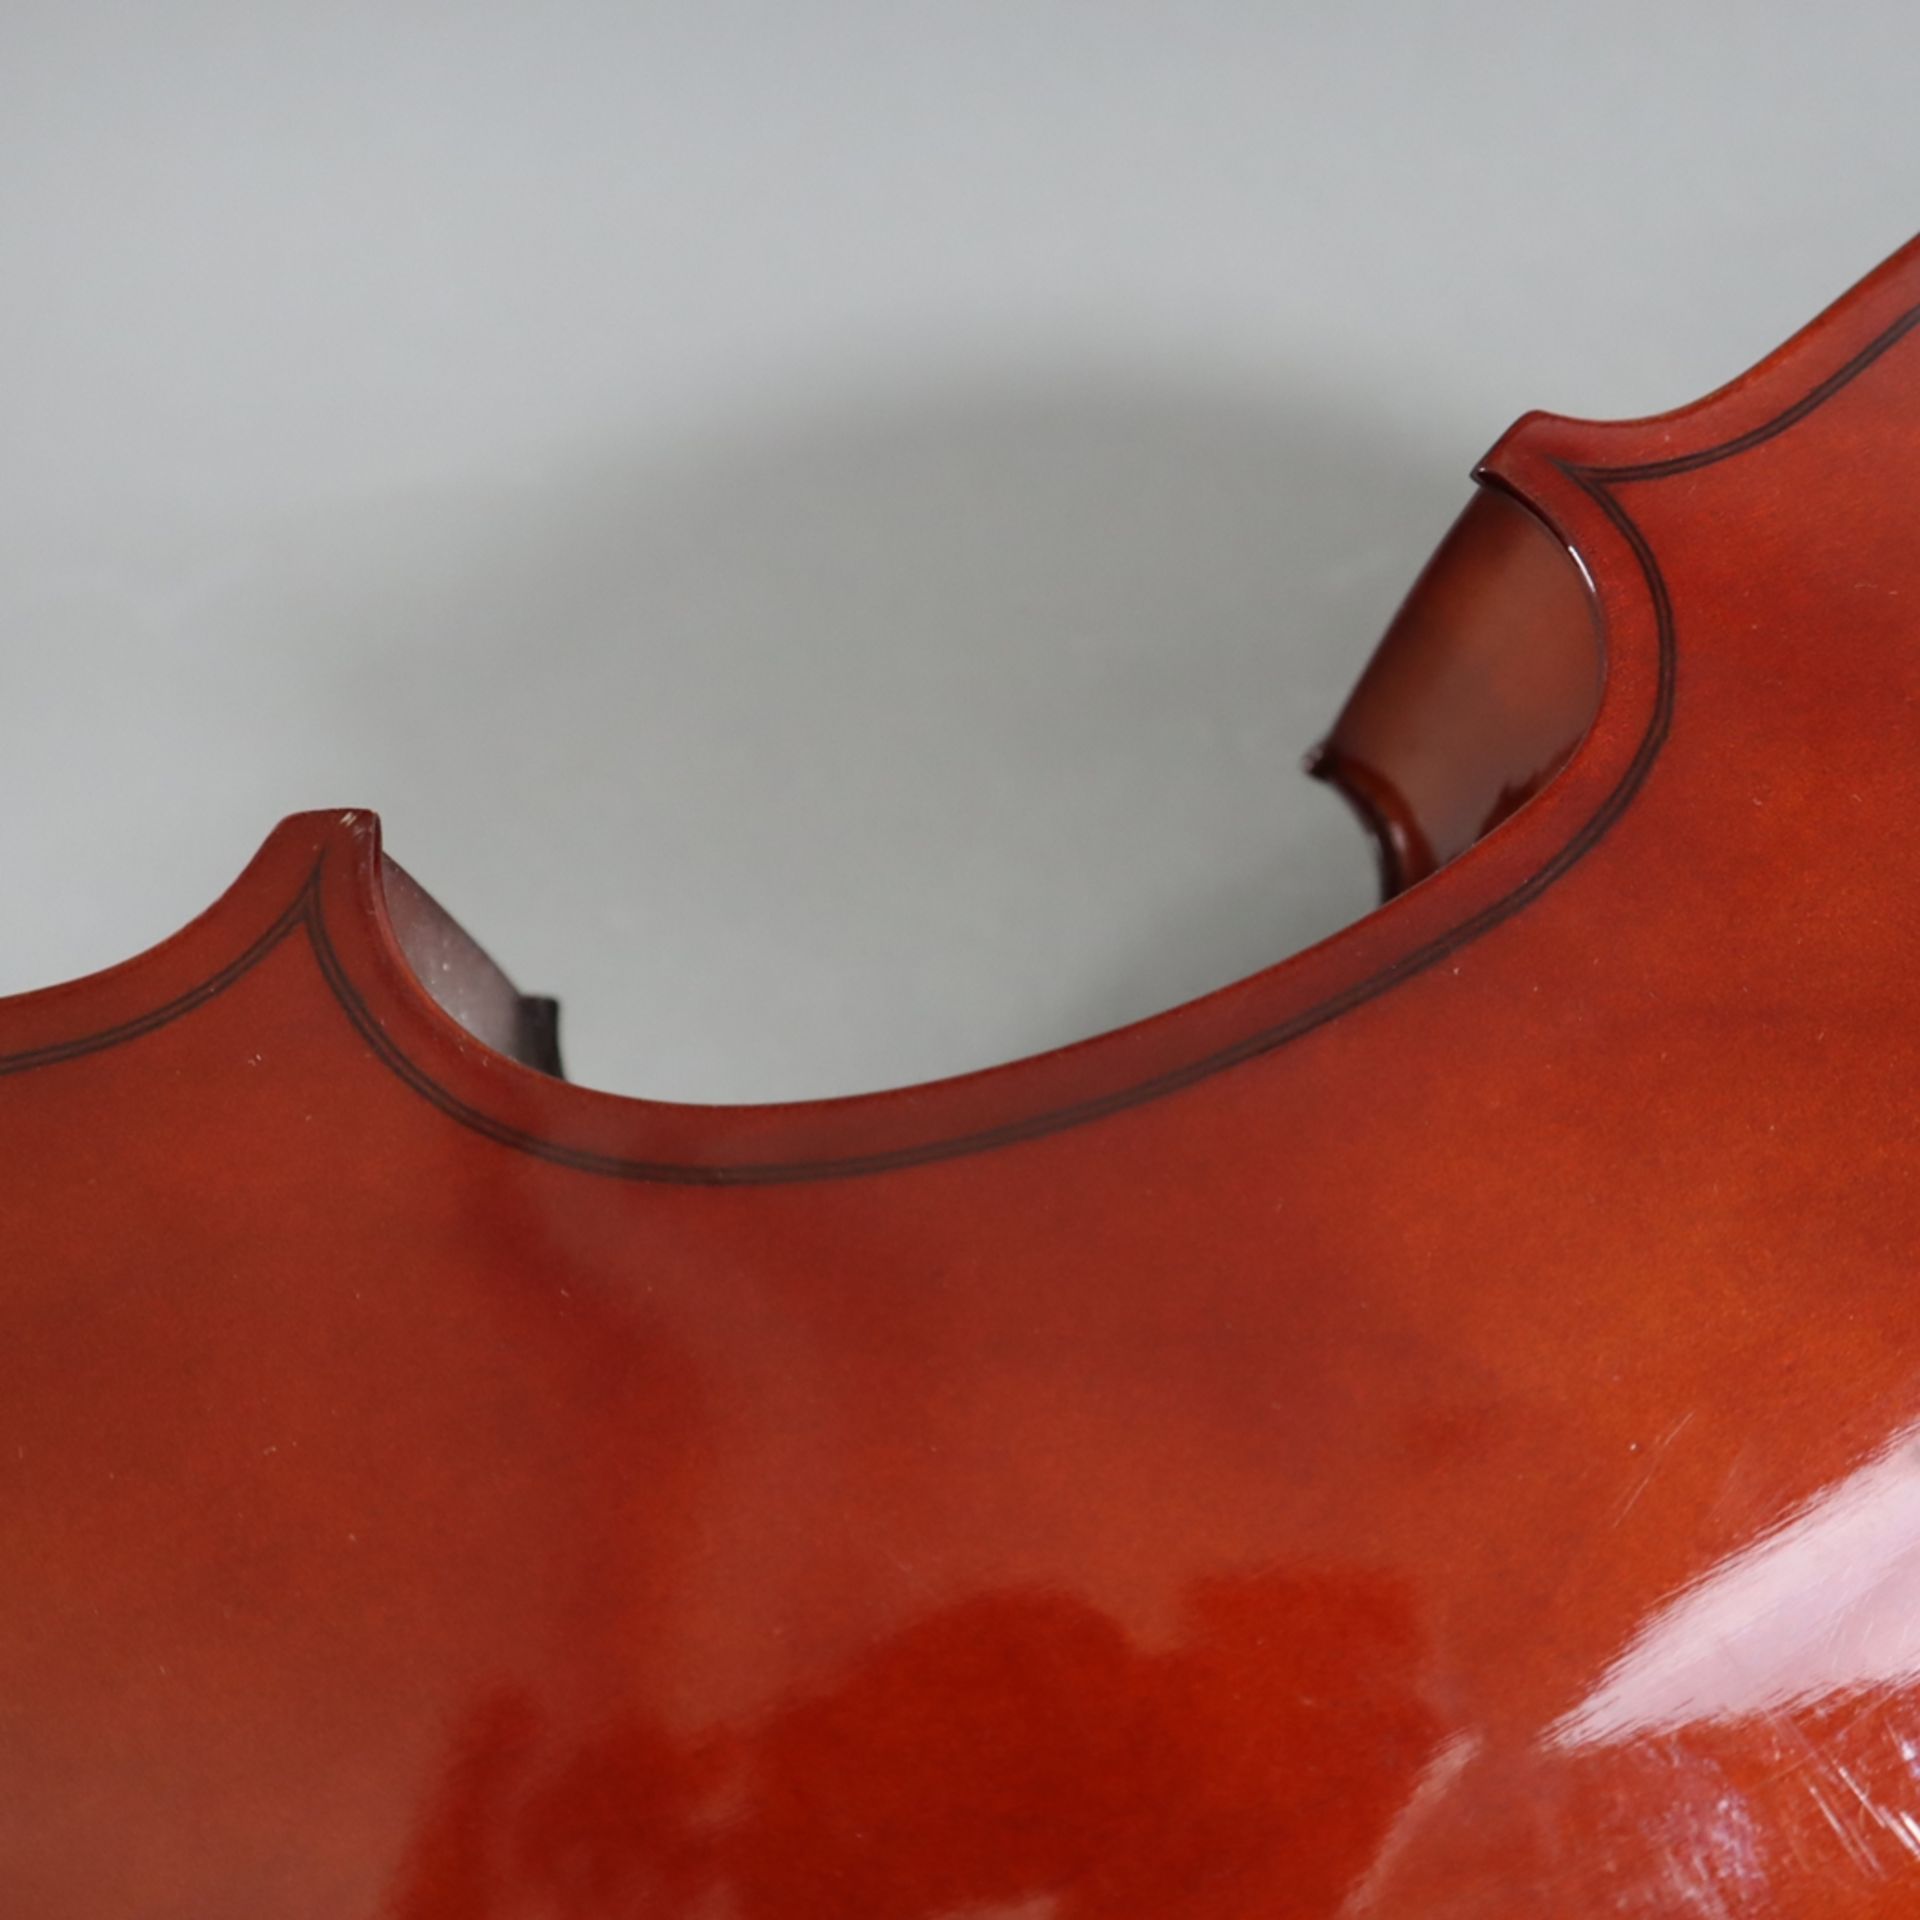 Cello - Kindergröße, innen mit Aufkleber "Made in Czechoslovakia", Holzkorpus mit zwei f-Löchern, S - Image 7 of 12